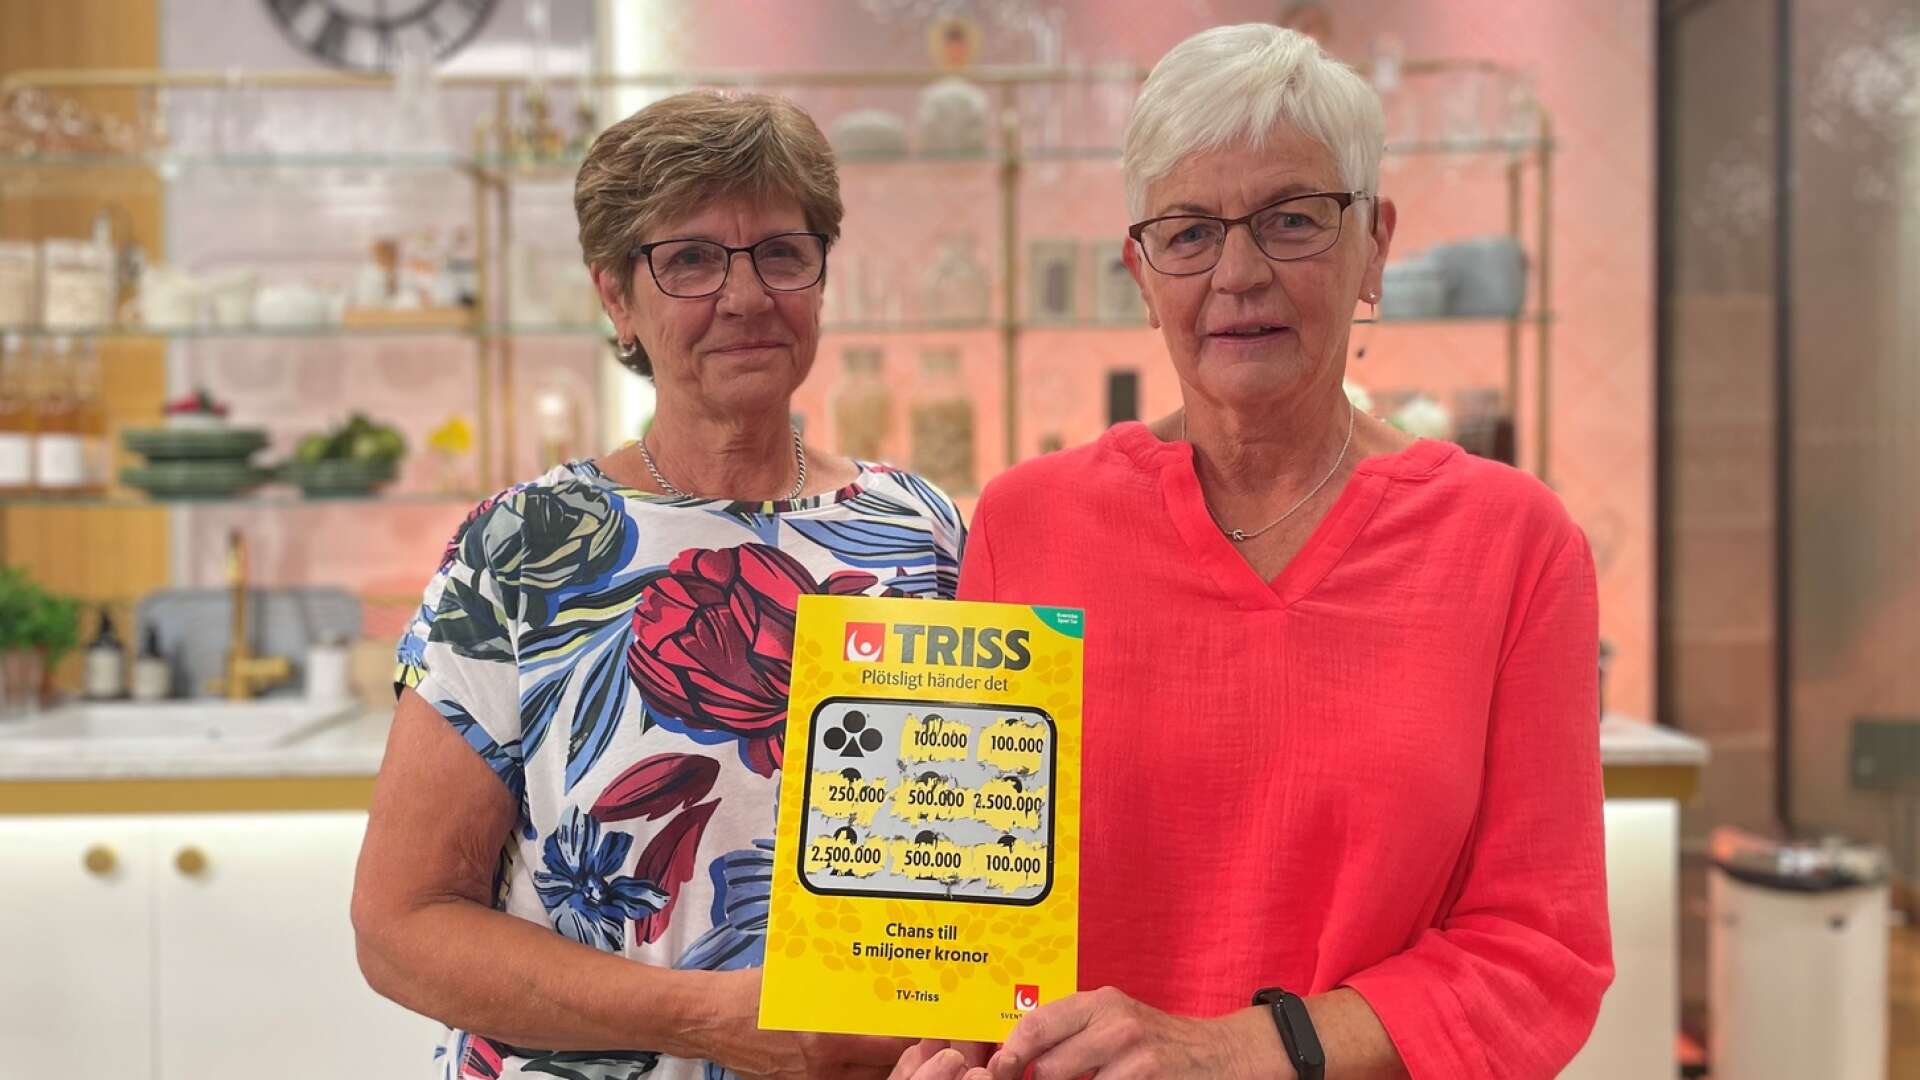 Majken och Inger från Säffle vann 100 000 kronor till sitt kompisgäng när de skrapade Triss i Nyhetsmorgon.